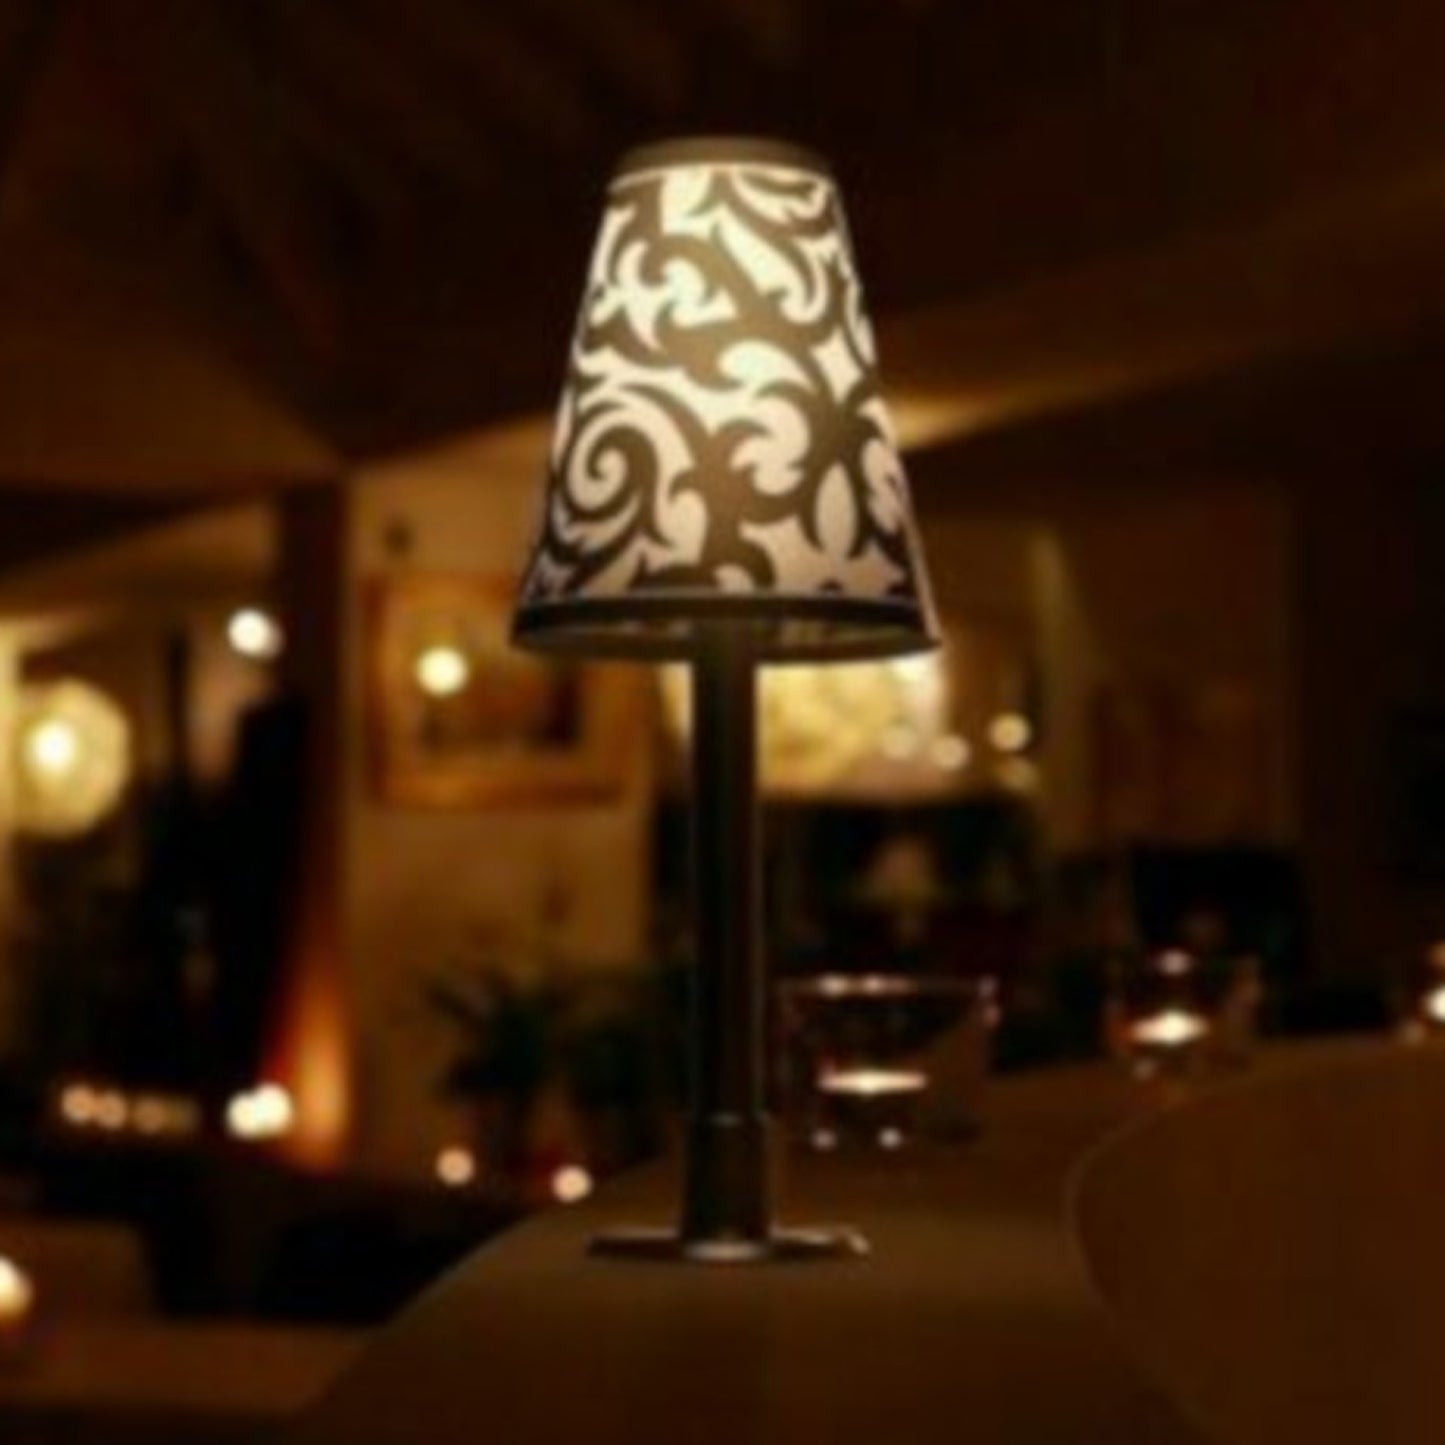 Tischleuchte BOT09-3 mit austauschbaren Lampenschirmen (Warmweiß) 27 cm